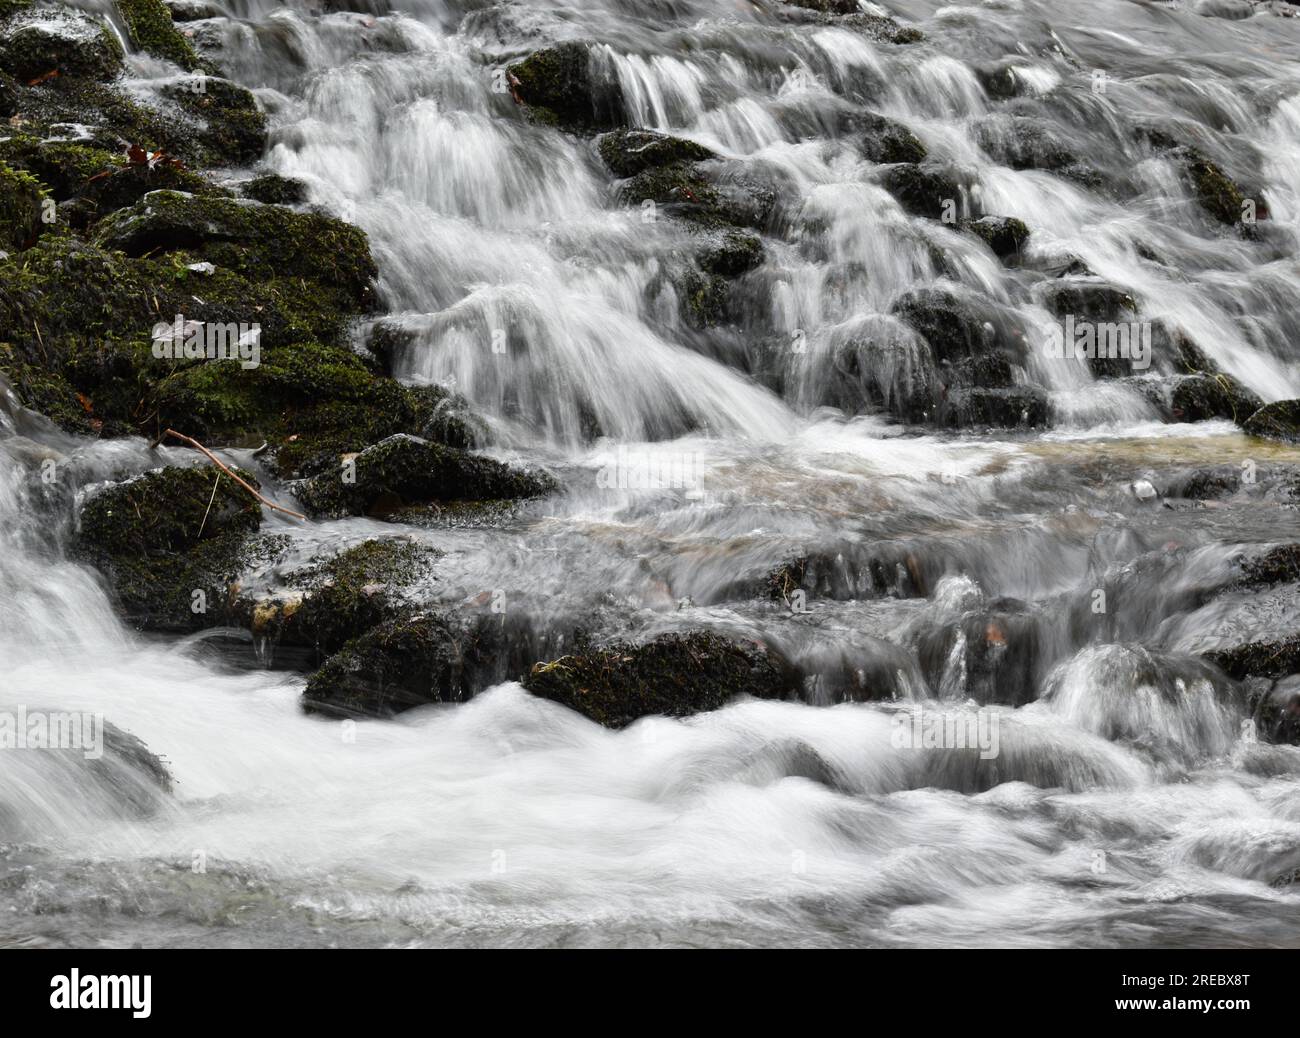 L'acqua scorre su rocce coperte di muschio formando una cascata poco profonda. Foto Stock